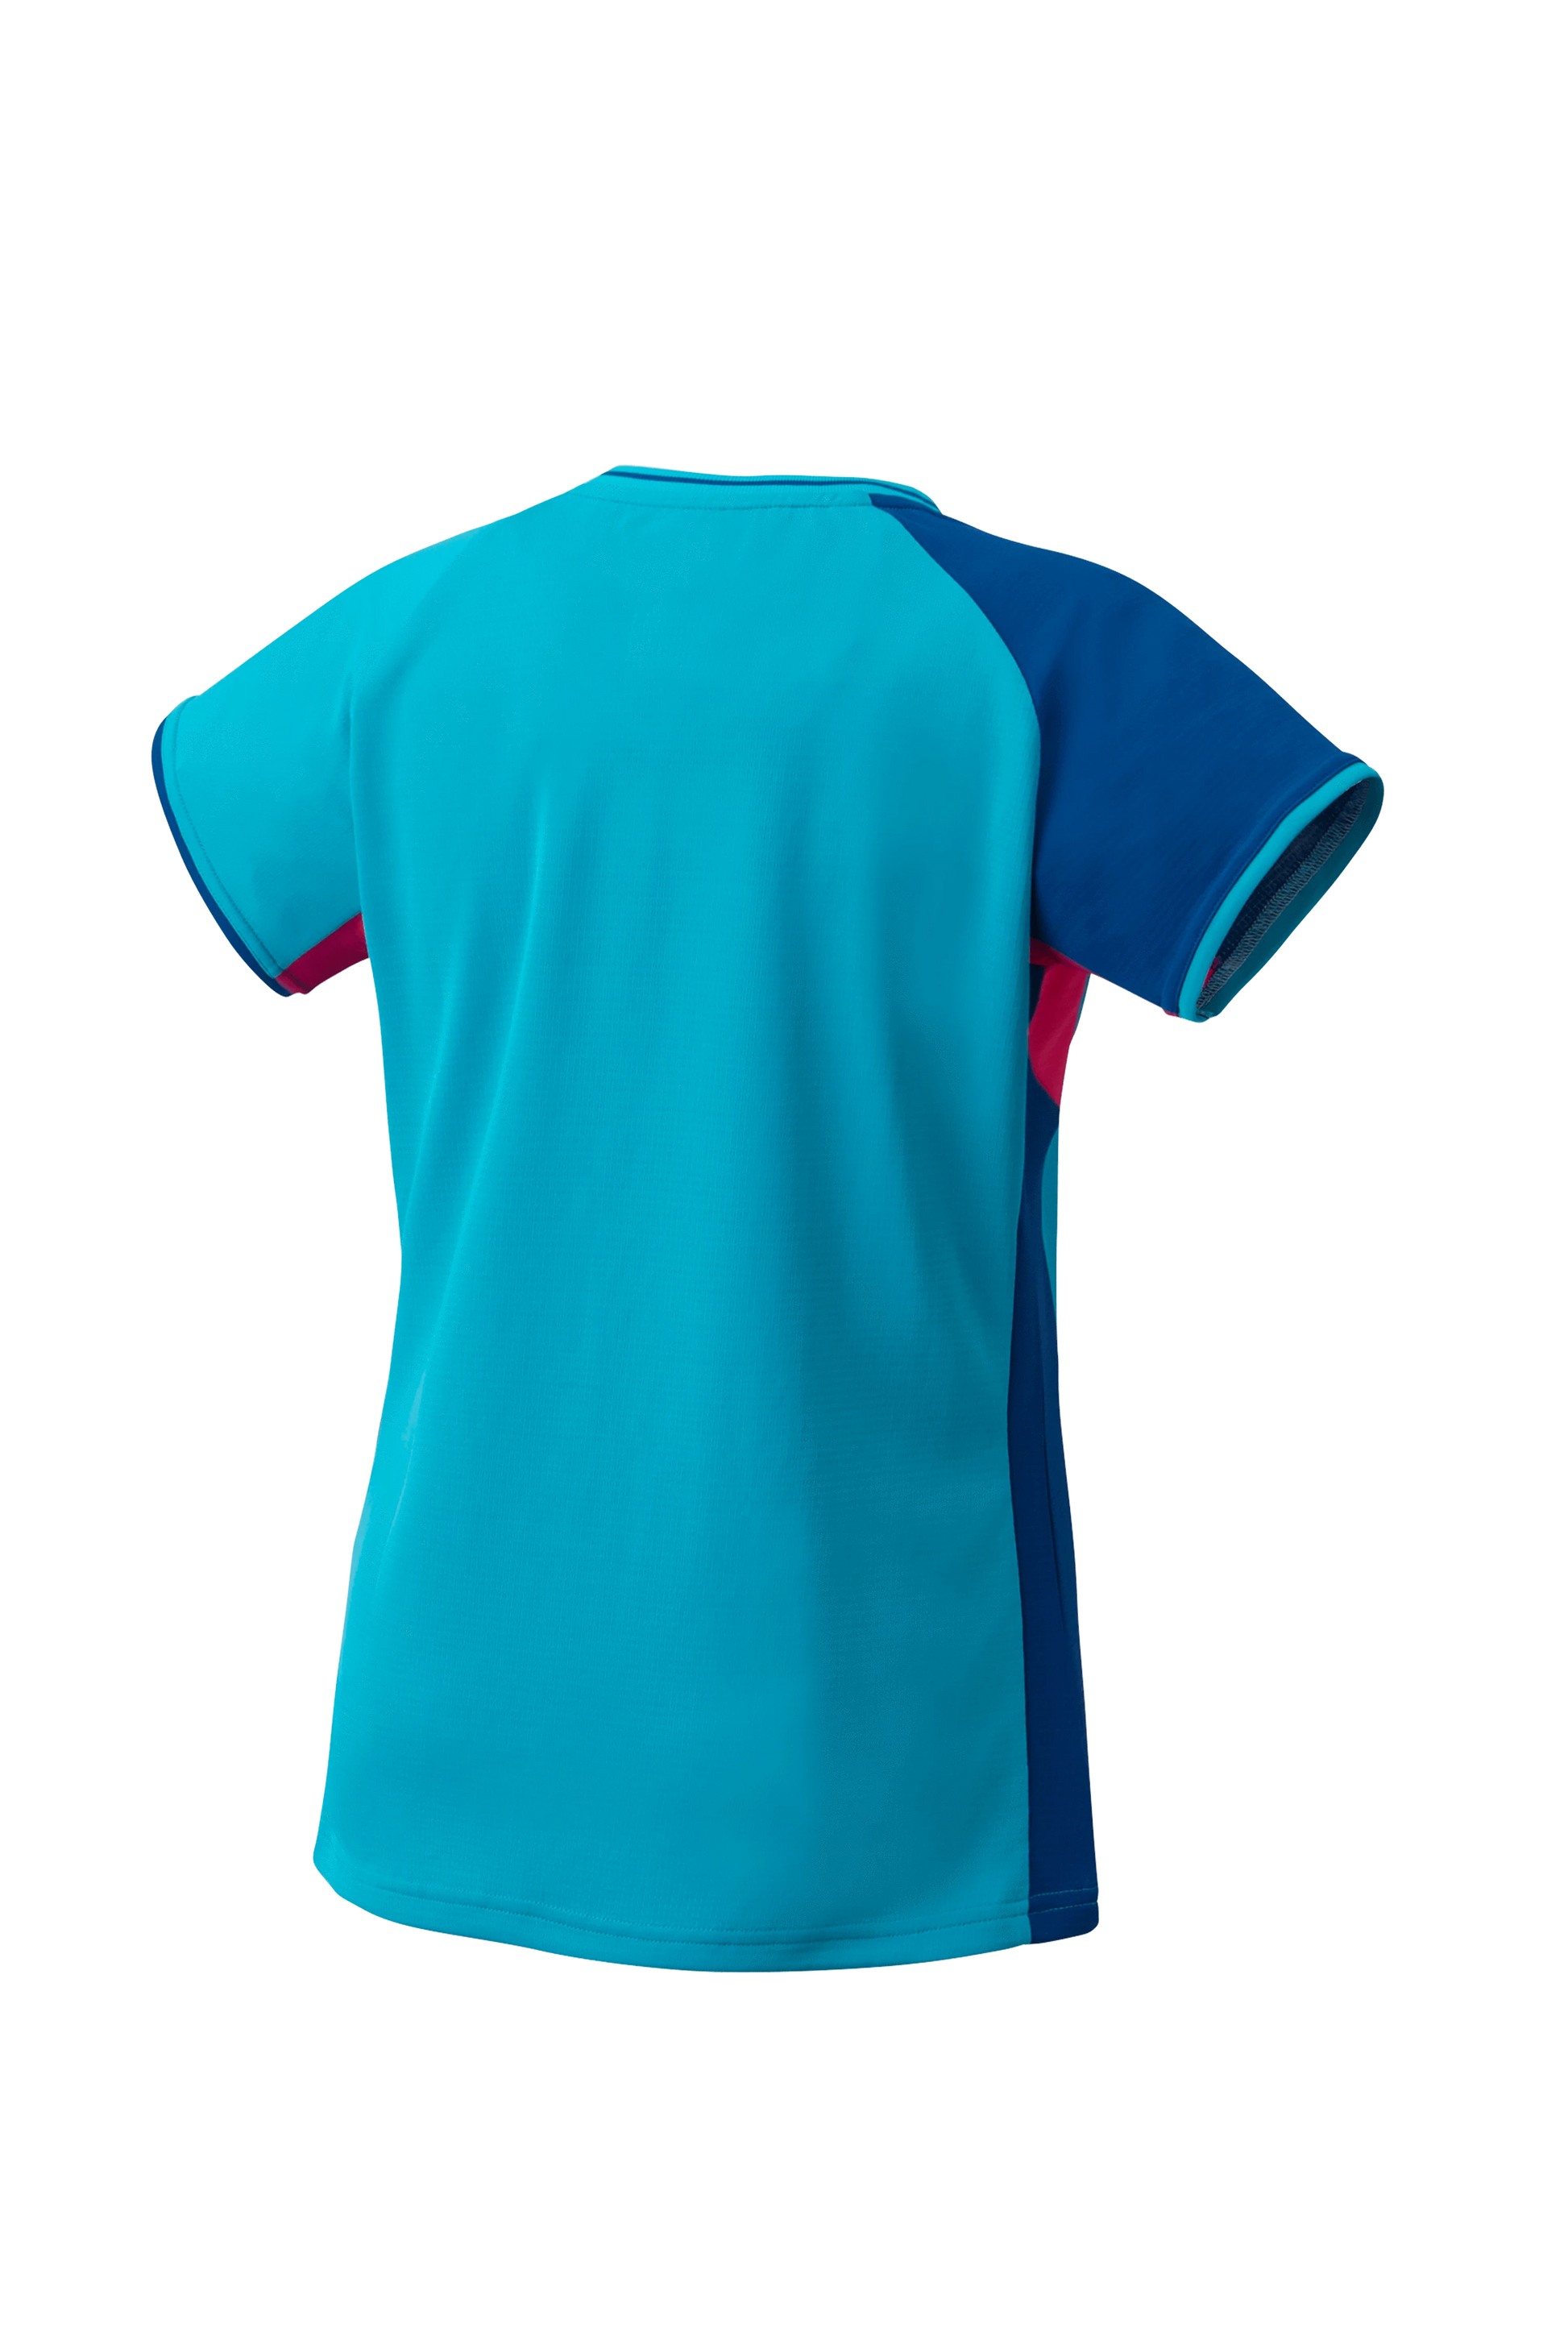 Yonex Women's Tournament Shirt 20640 (Turquoise)